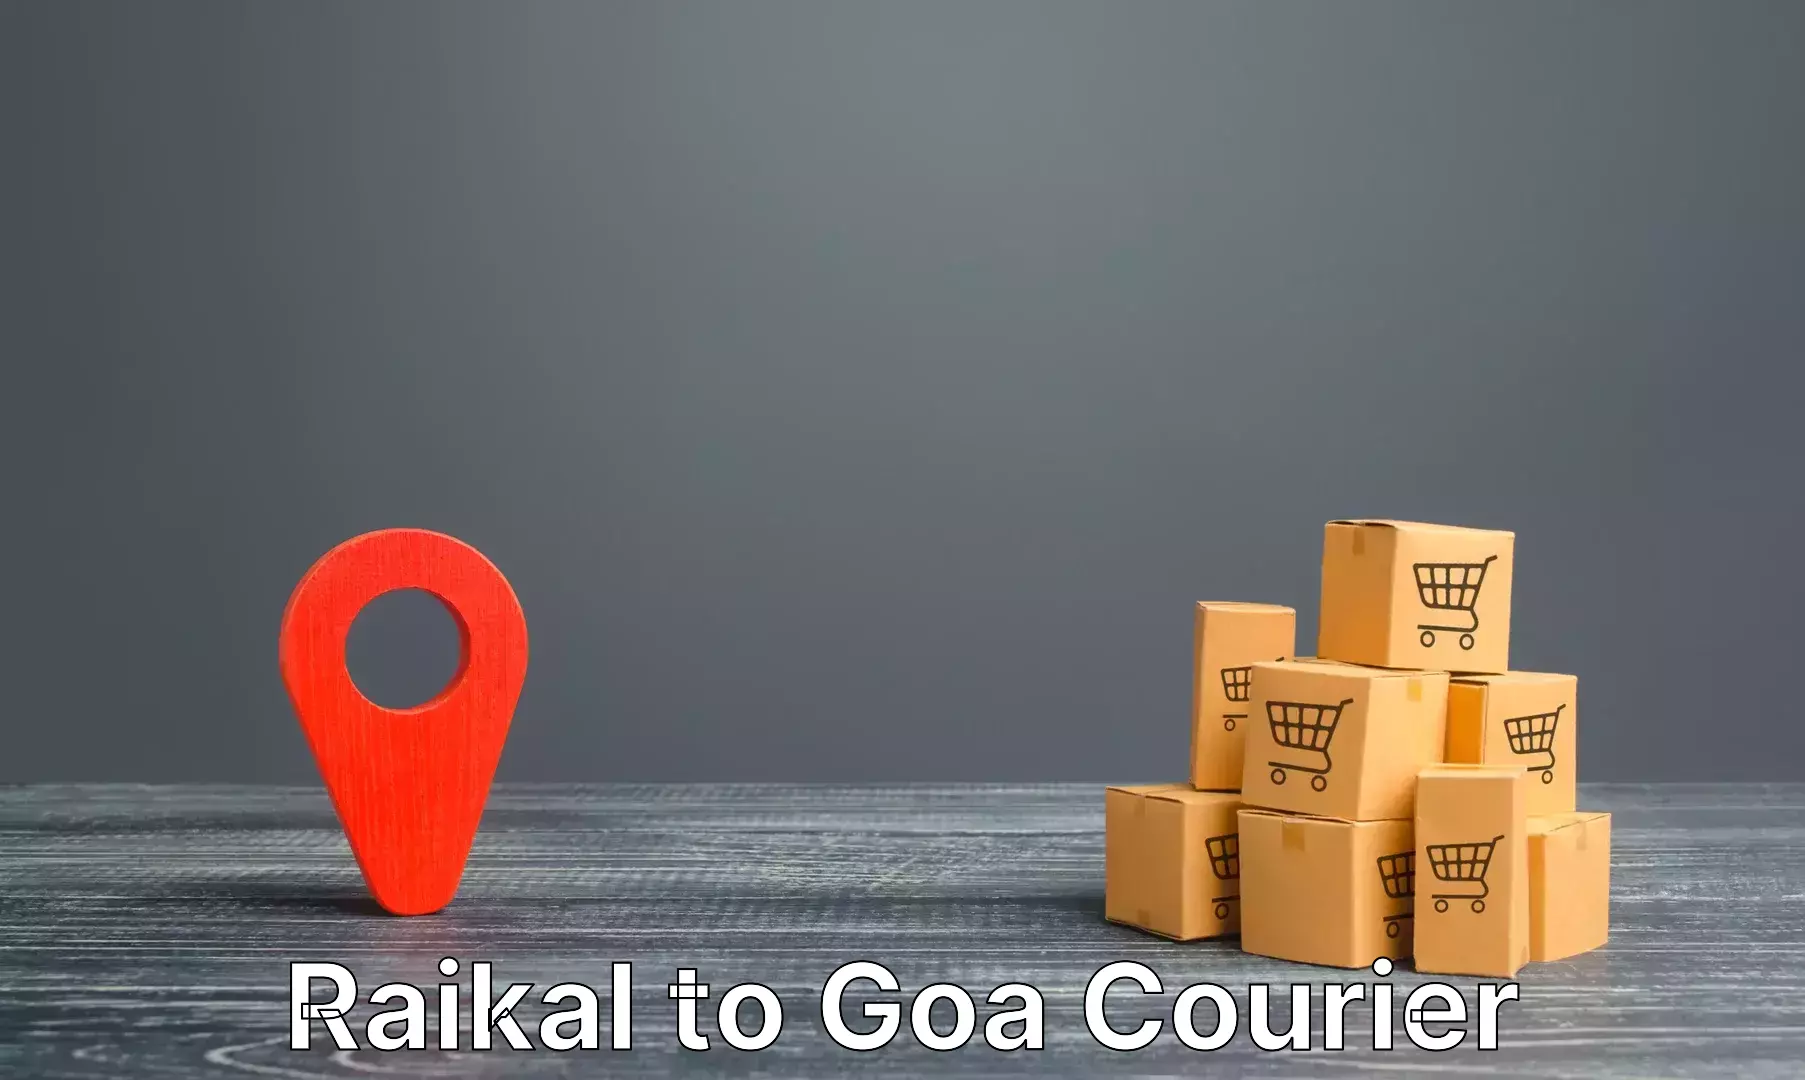 Luggage transport consultancy Raikal to Panaji